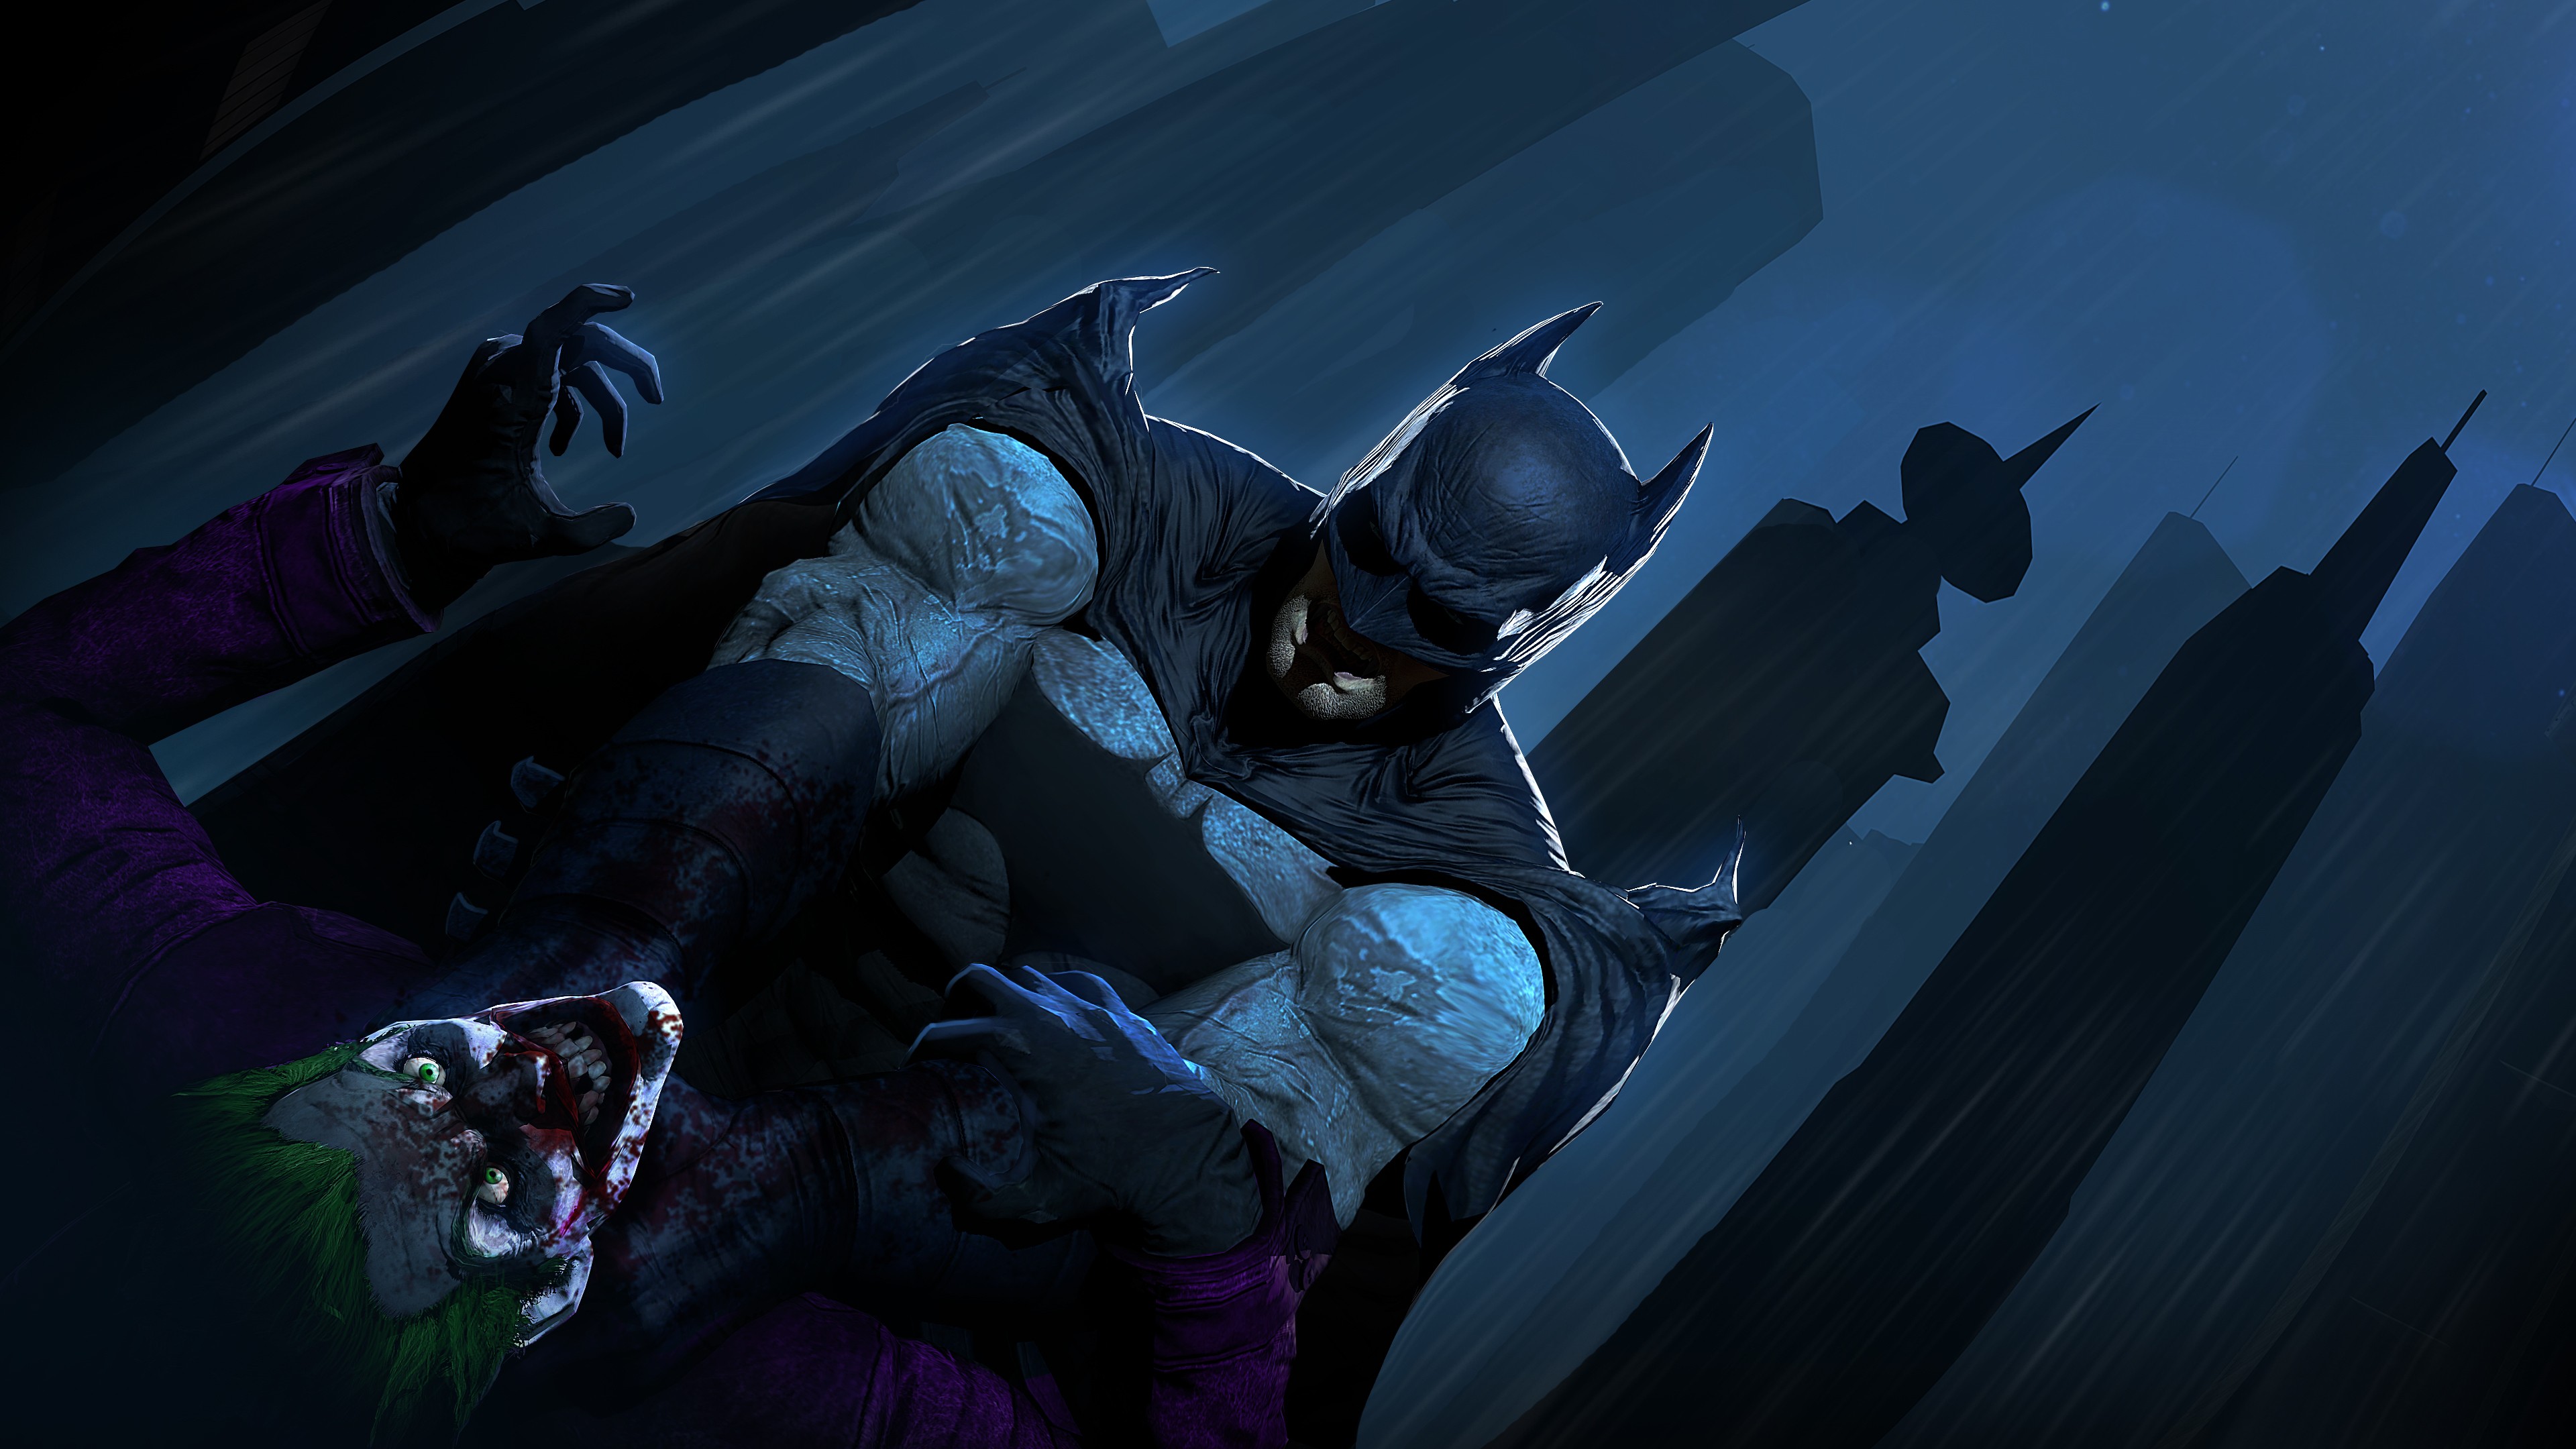 Batman Vs Joker 4K Wallpapers | HD Wallpapers